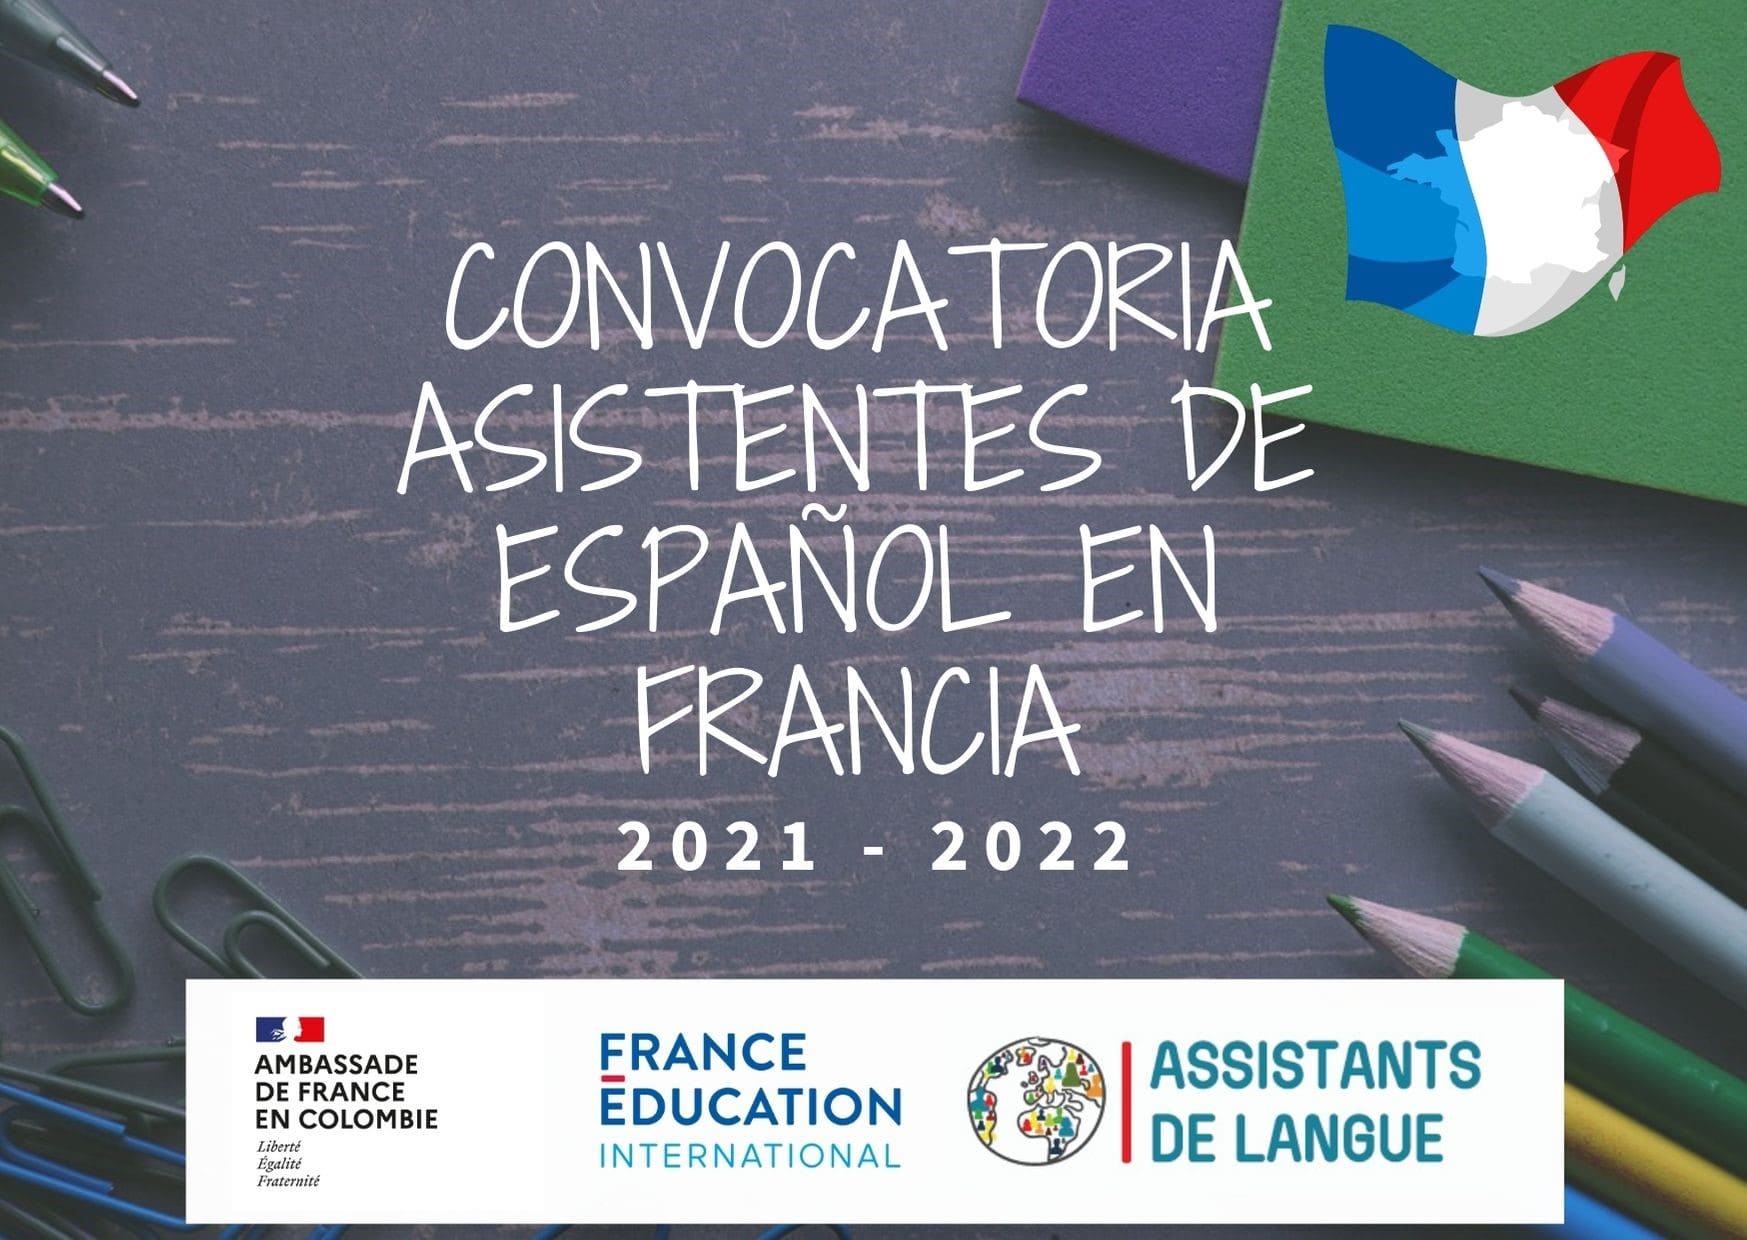 60 estudiantes de pregrado, en programas de lenguas modernas con énfasis en francés, podrán viajar a Francia en el 2021 para ser Asistentes de Idioma Español con becas parciales